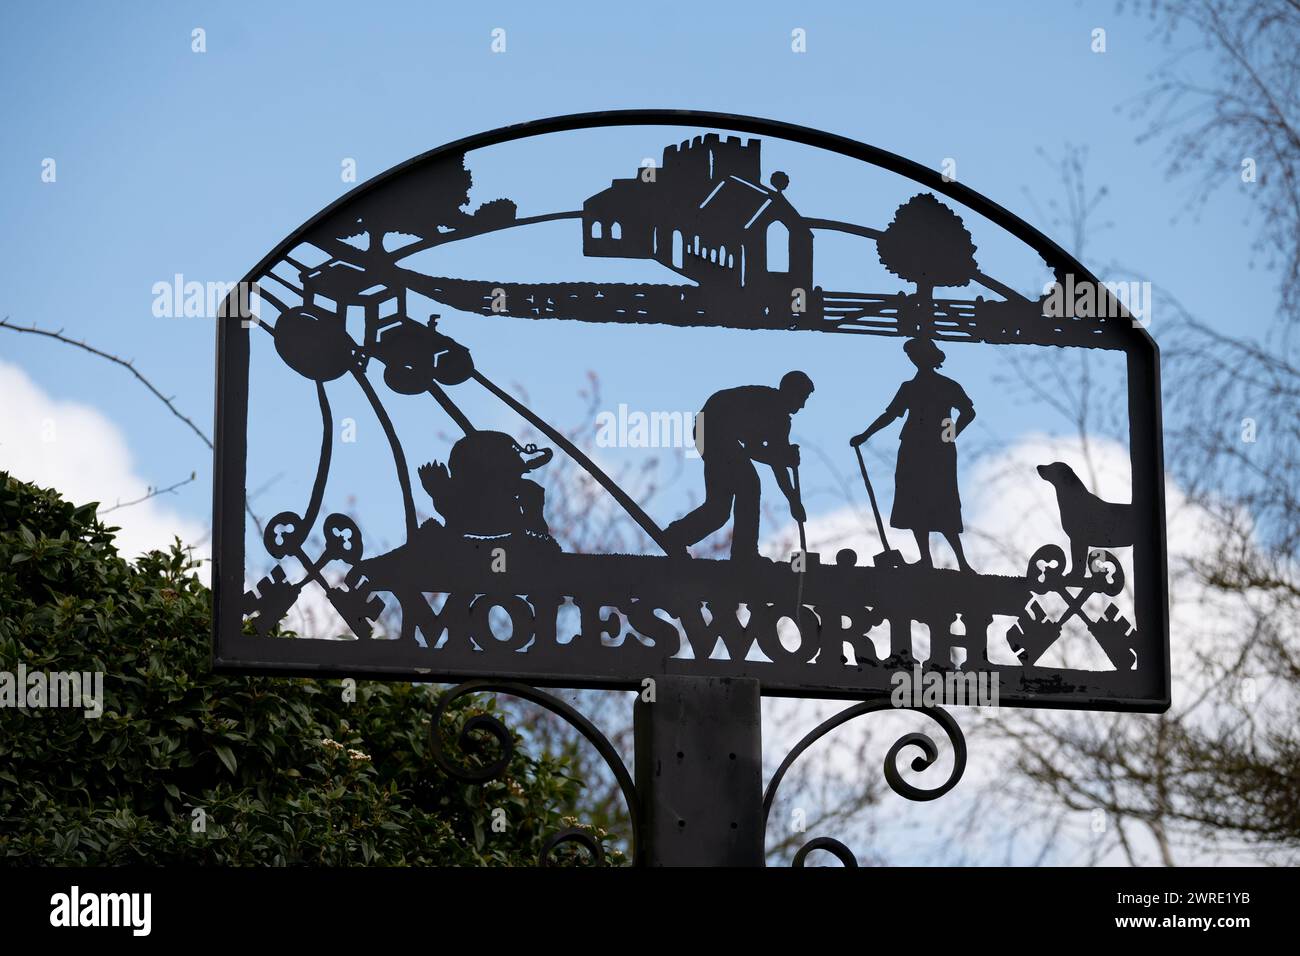 Molesworth village sign, Cambridgeshire, England, UK Stock Photo